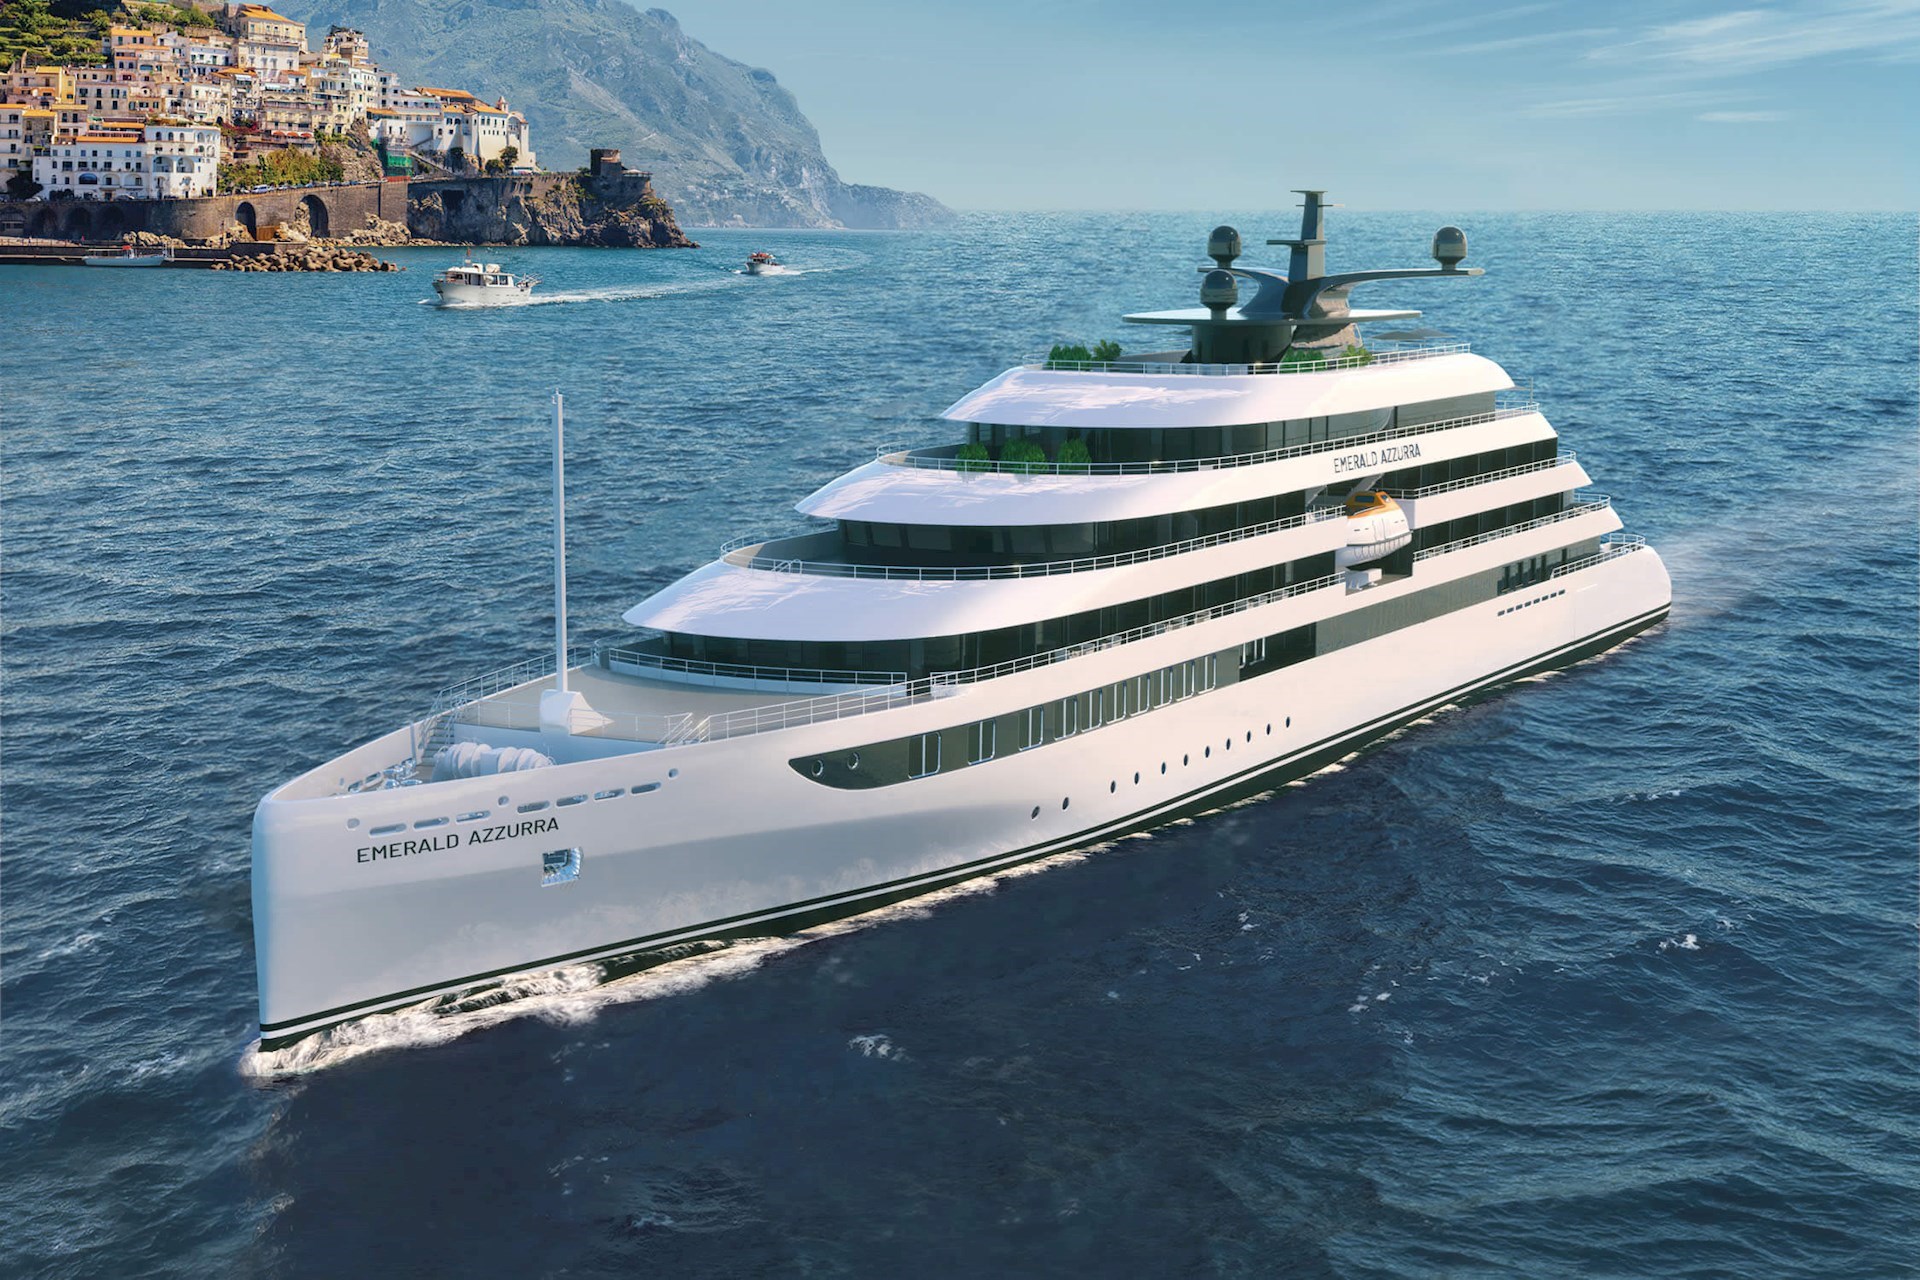 luxury cruise yacht